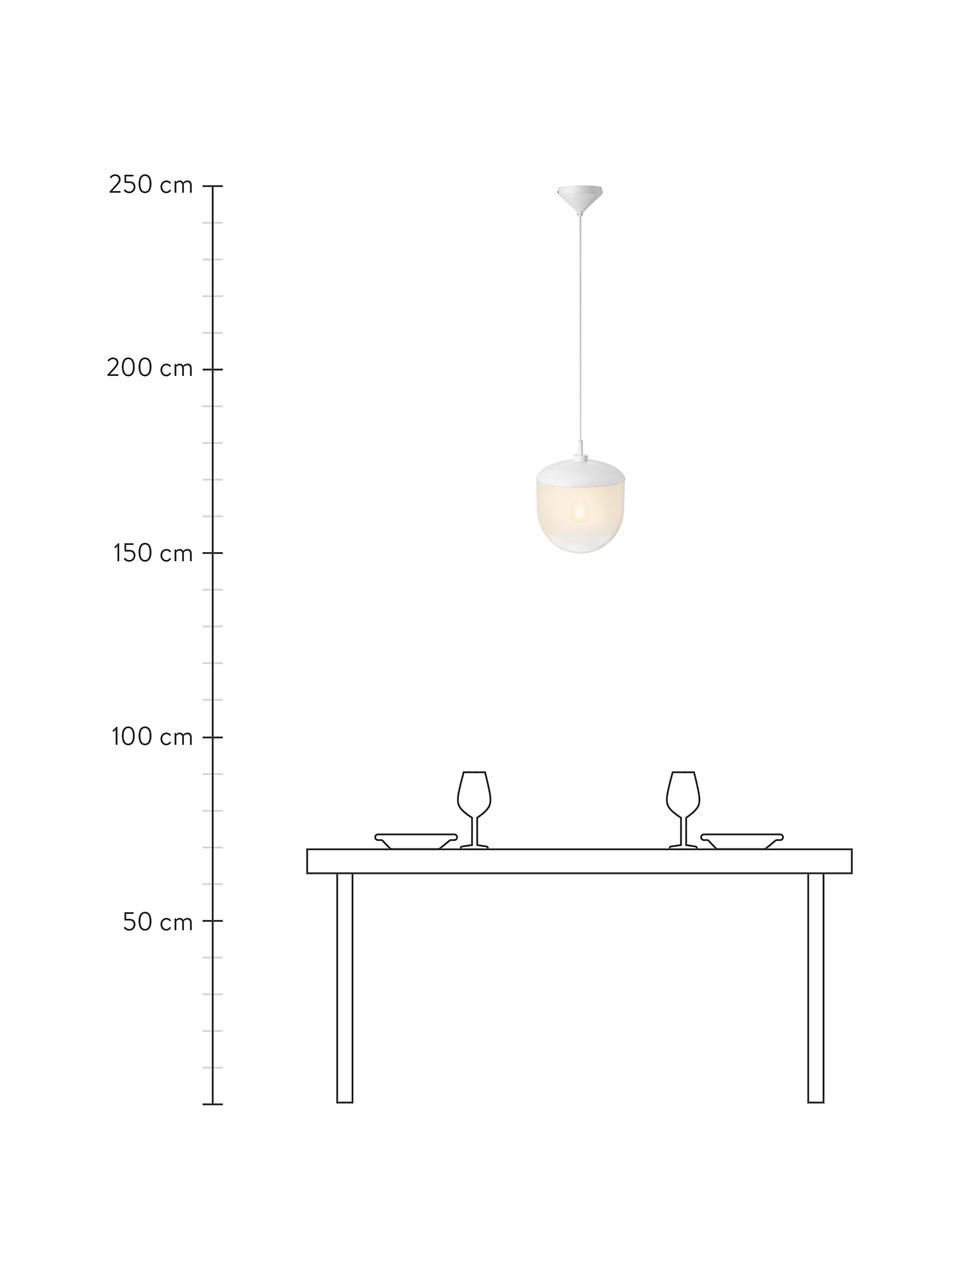 Lámpara de techo pequeña de vidrio Magia, Pantalla: vidrio, Anclaje: metal recubierto, Cable: plástico, Blanco, Ø 25 x Al 32 cm